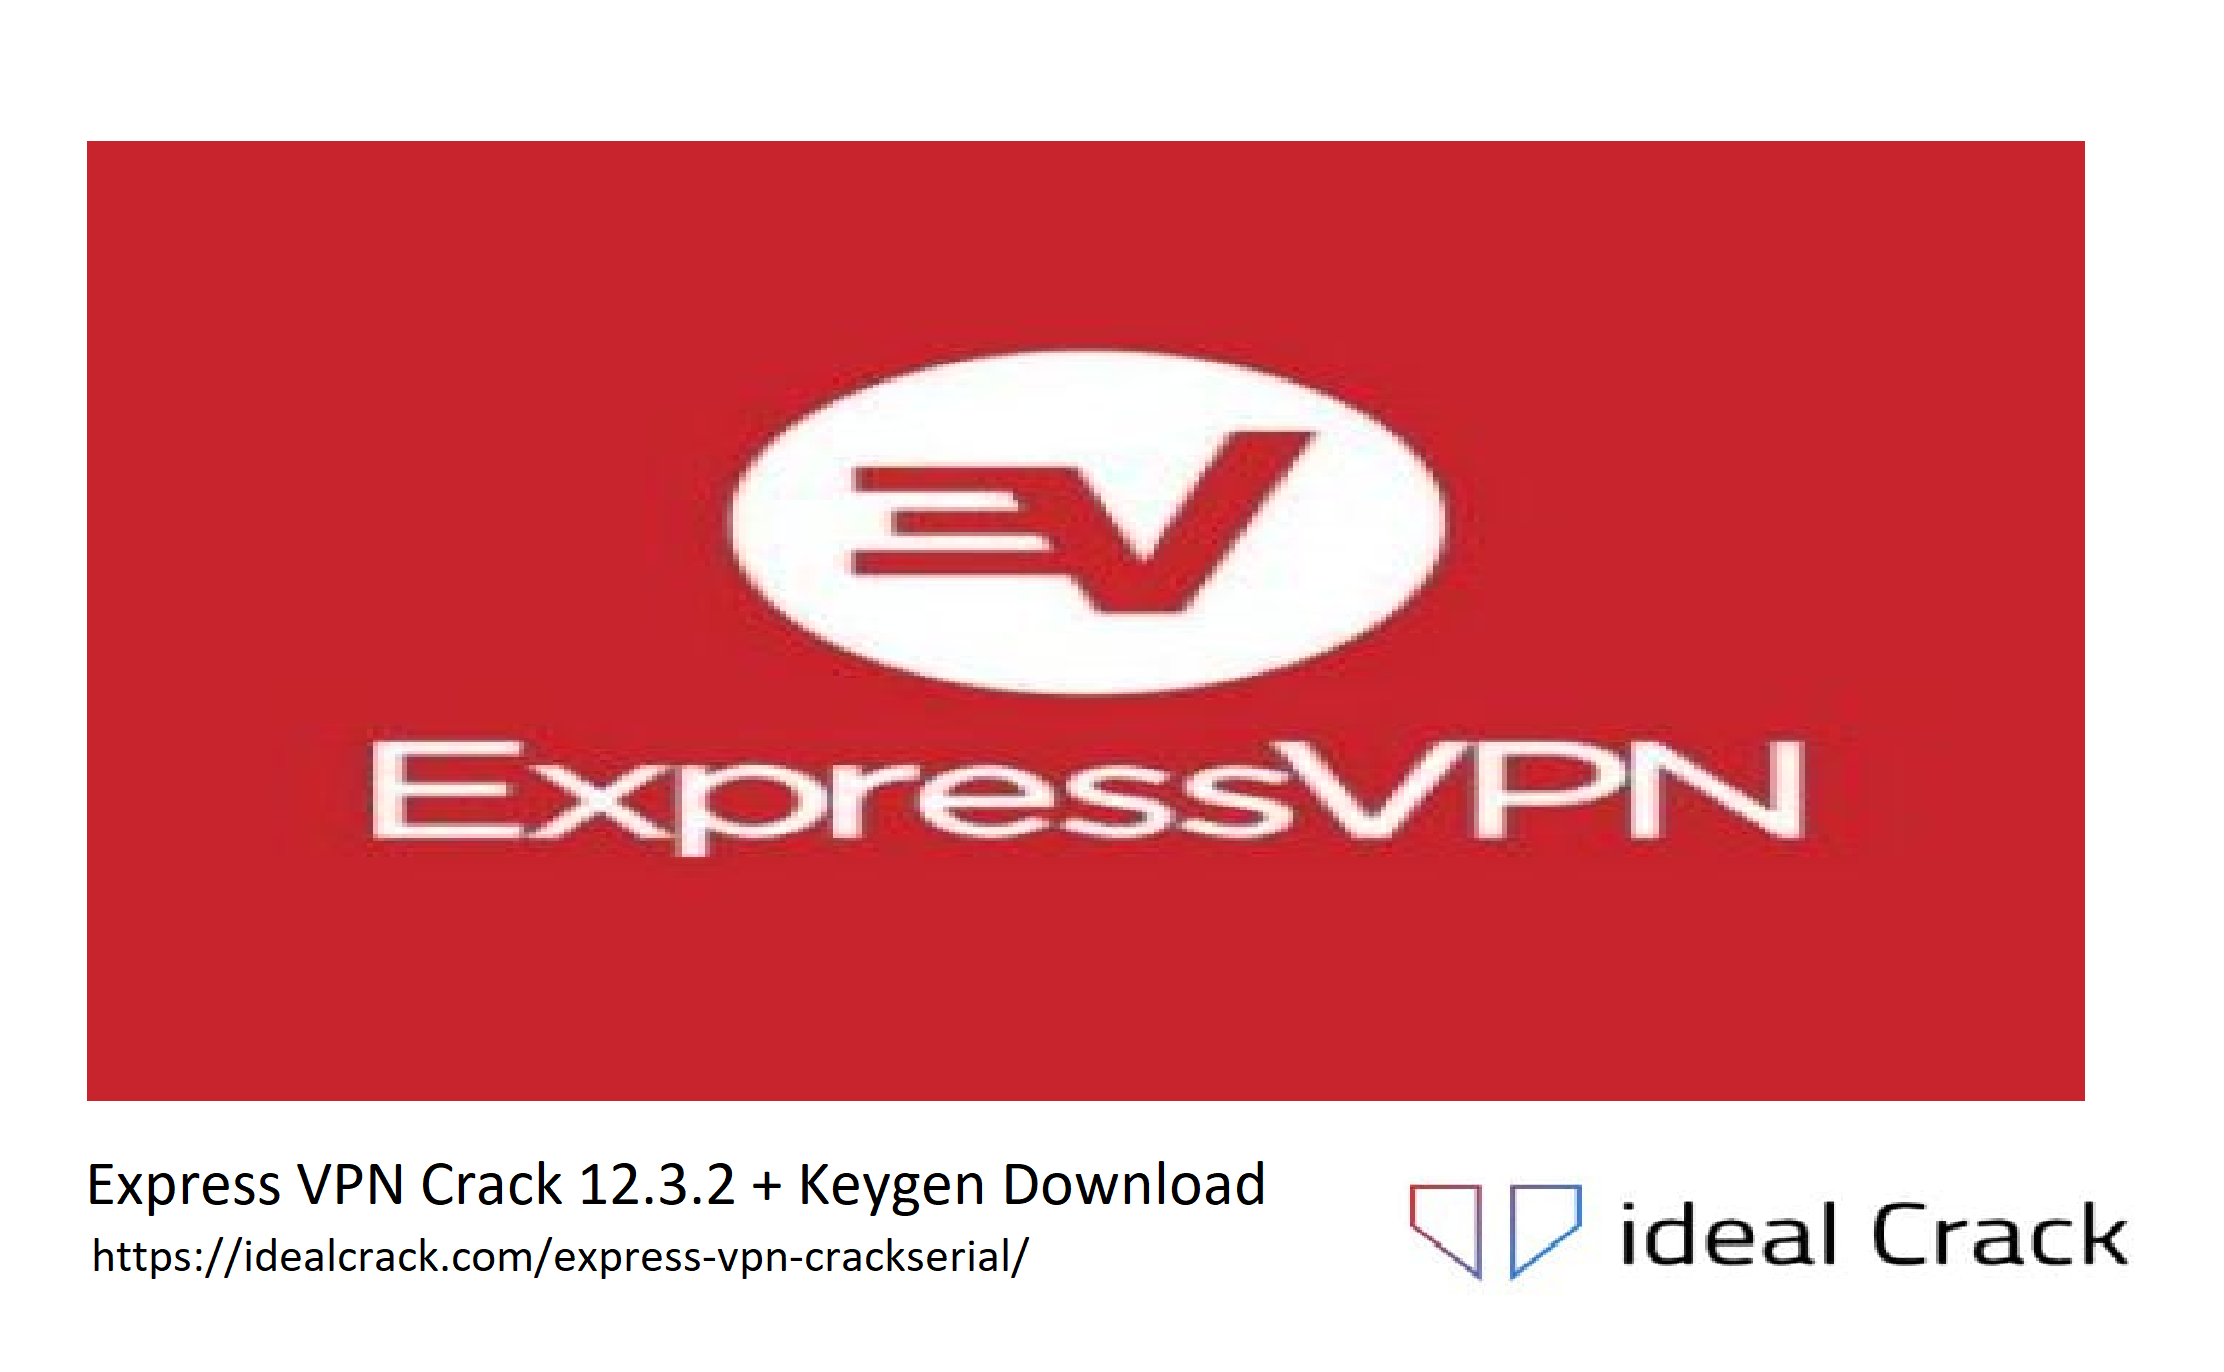 Express VPN Crack 12.3.2 + Keygen Download